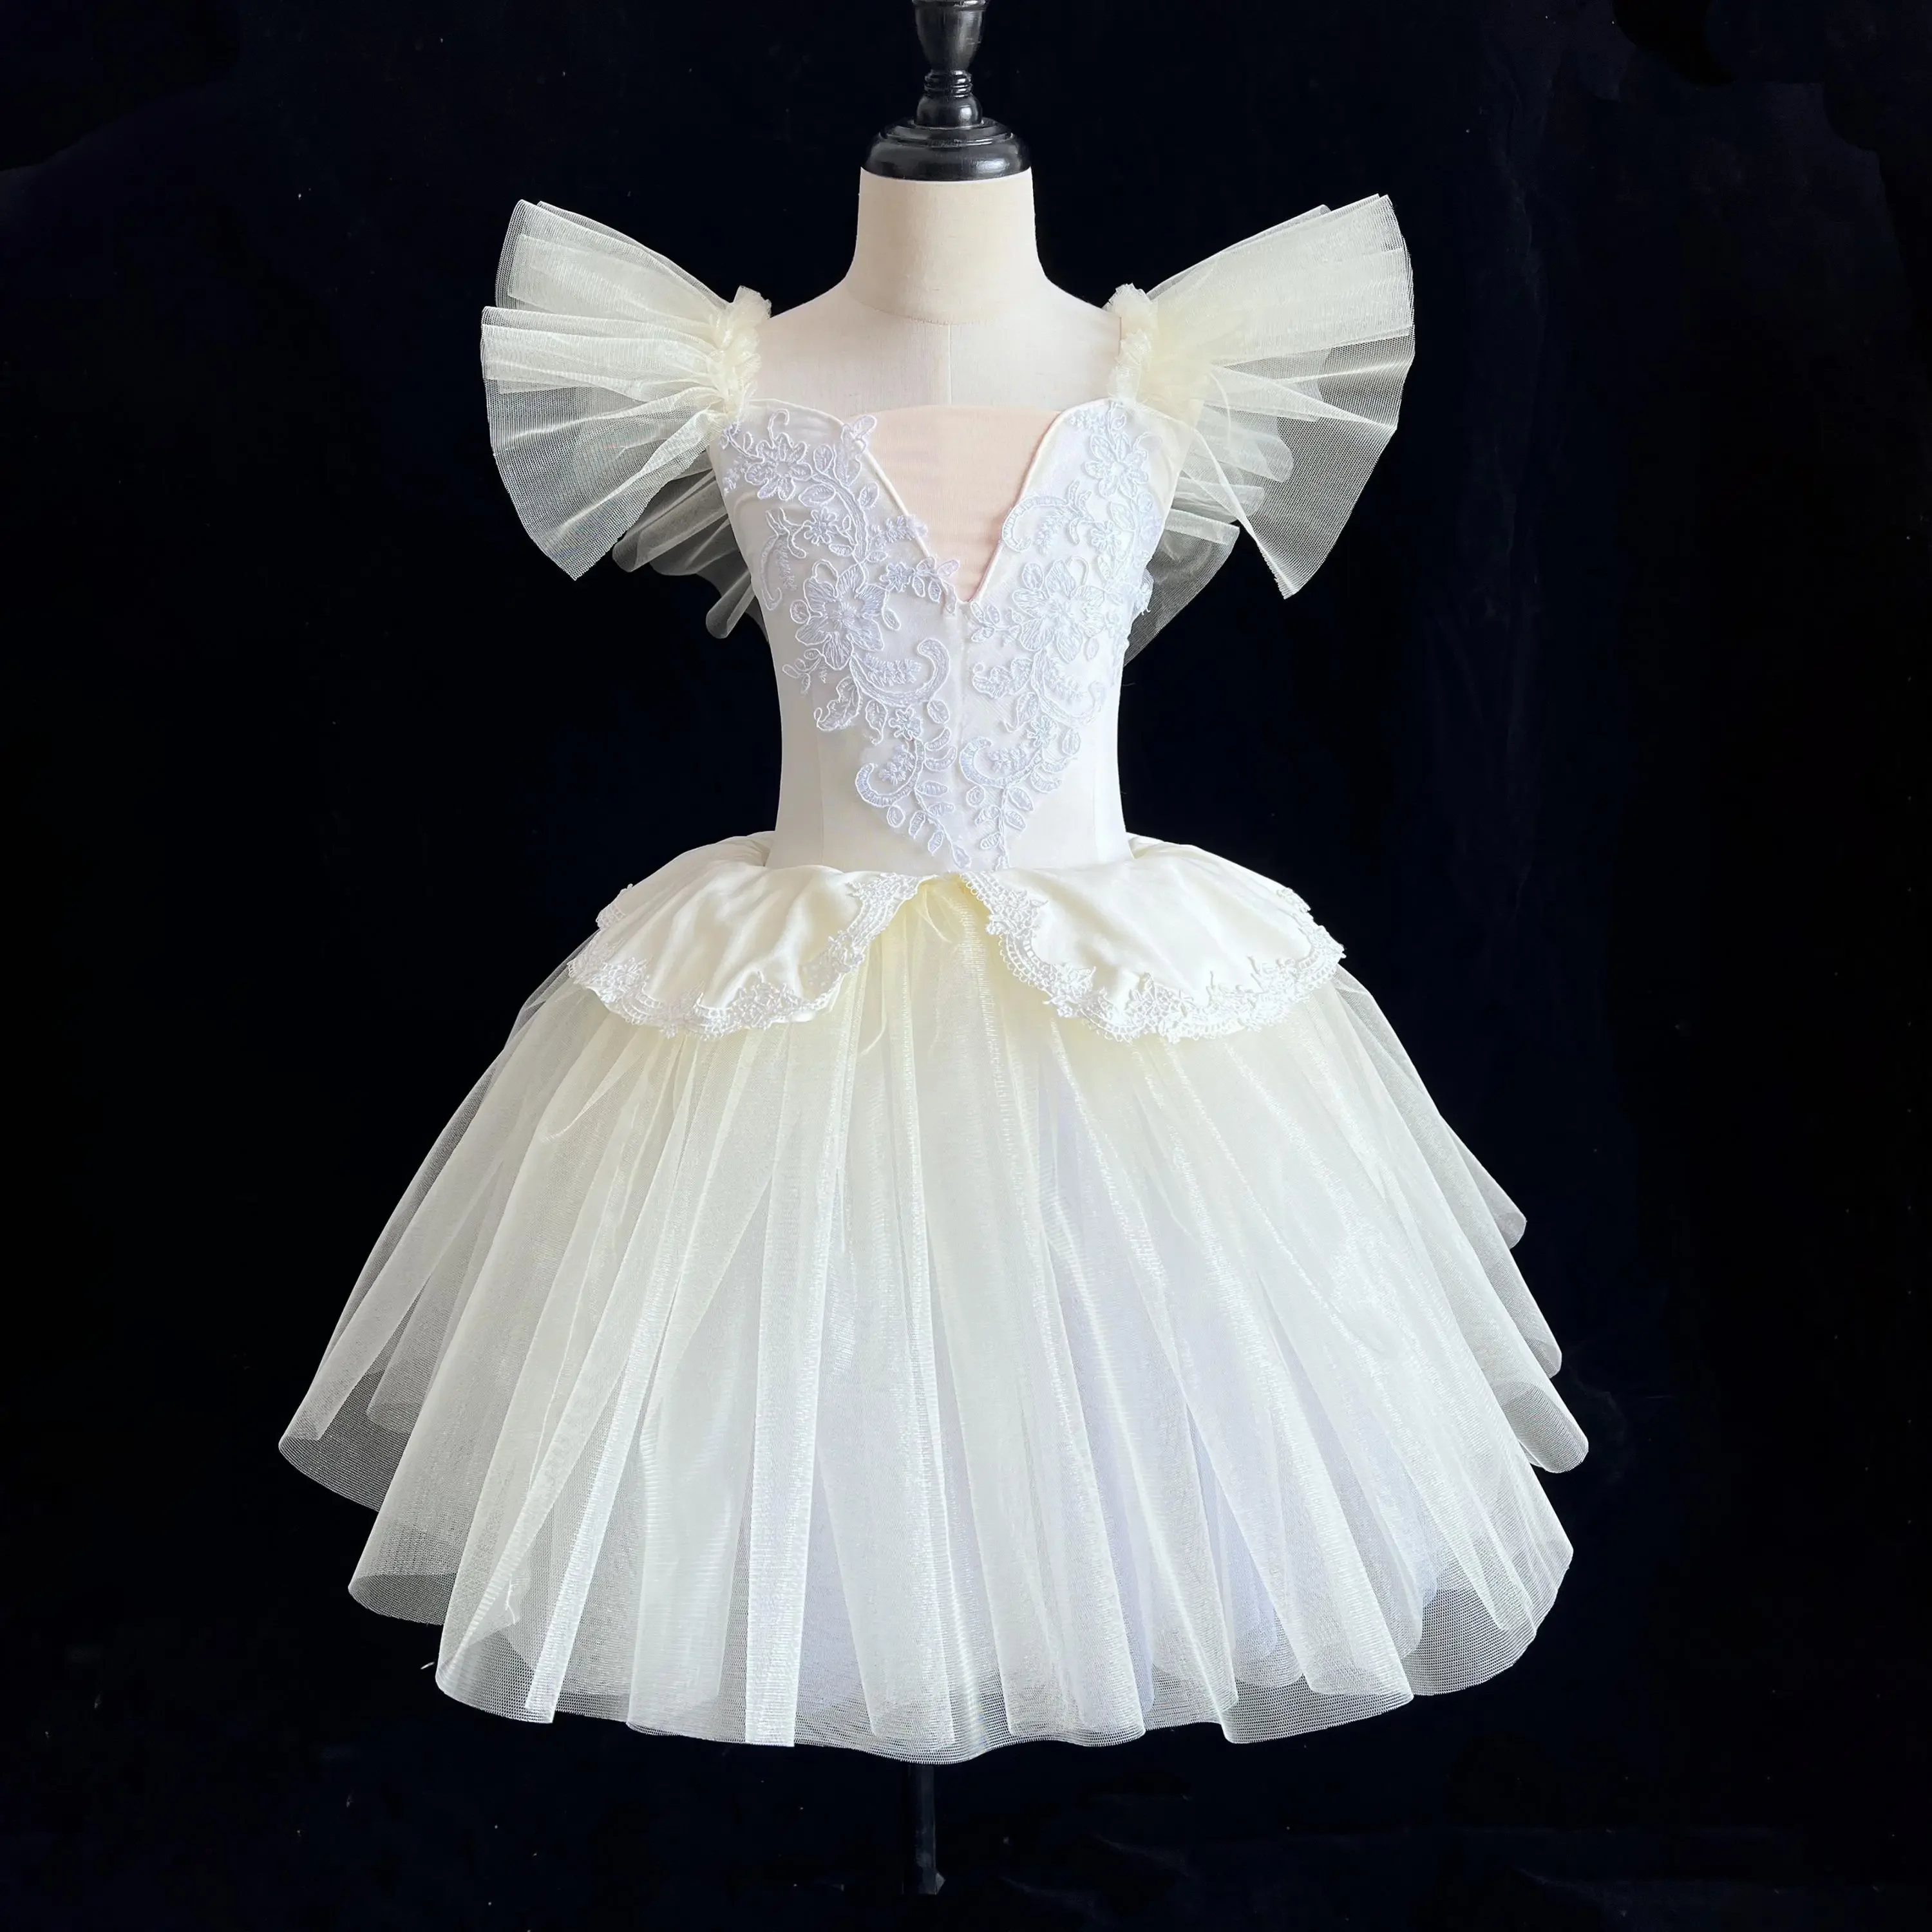 

Детская профессиональная балетная юбка для девочек, длинная пачка, балетная Одежда для взрослых, детское танцевальное платье принцессы с лебедем, одежда для выступлений